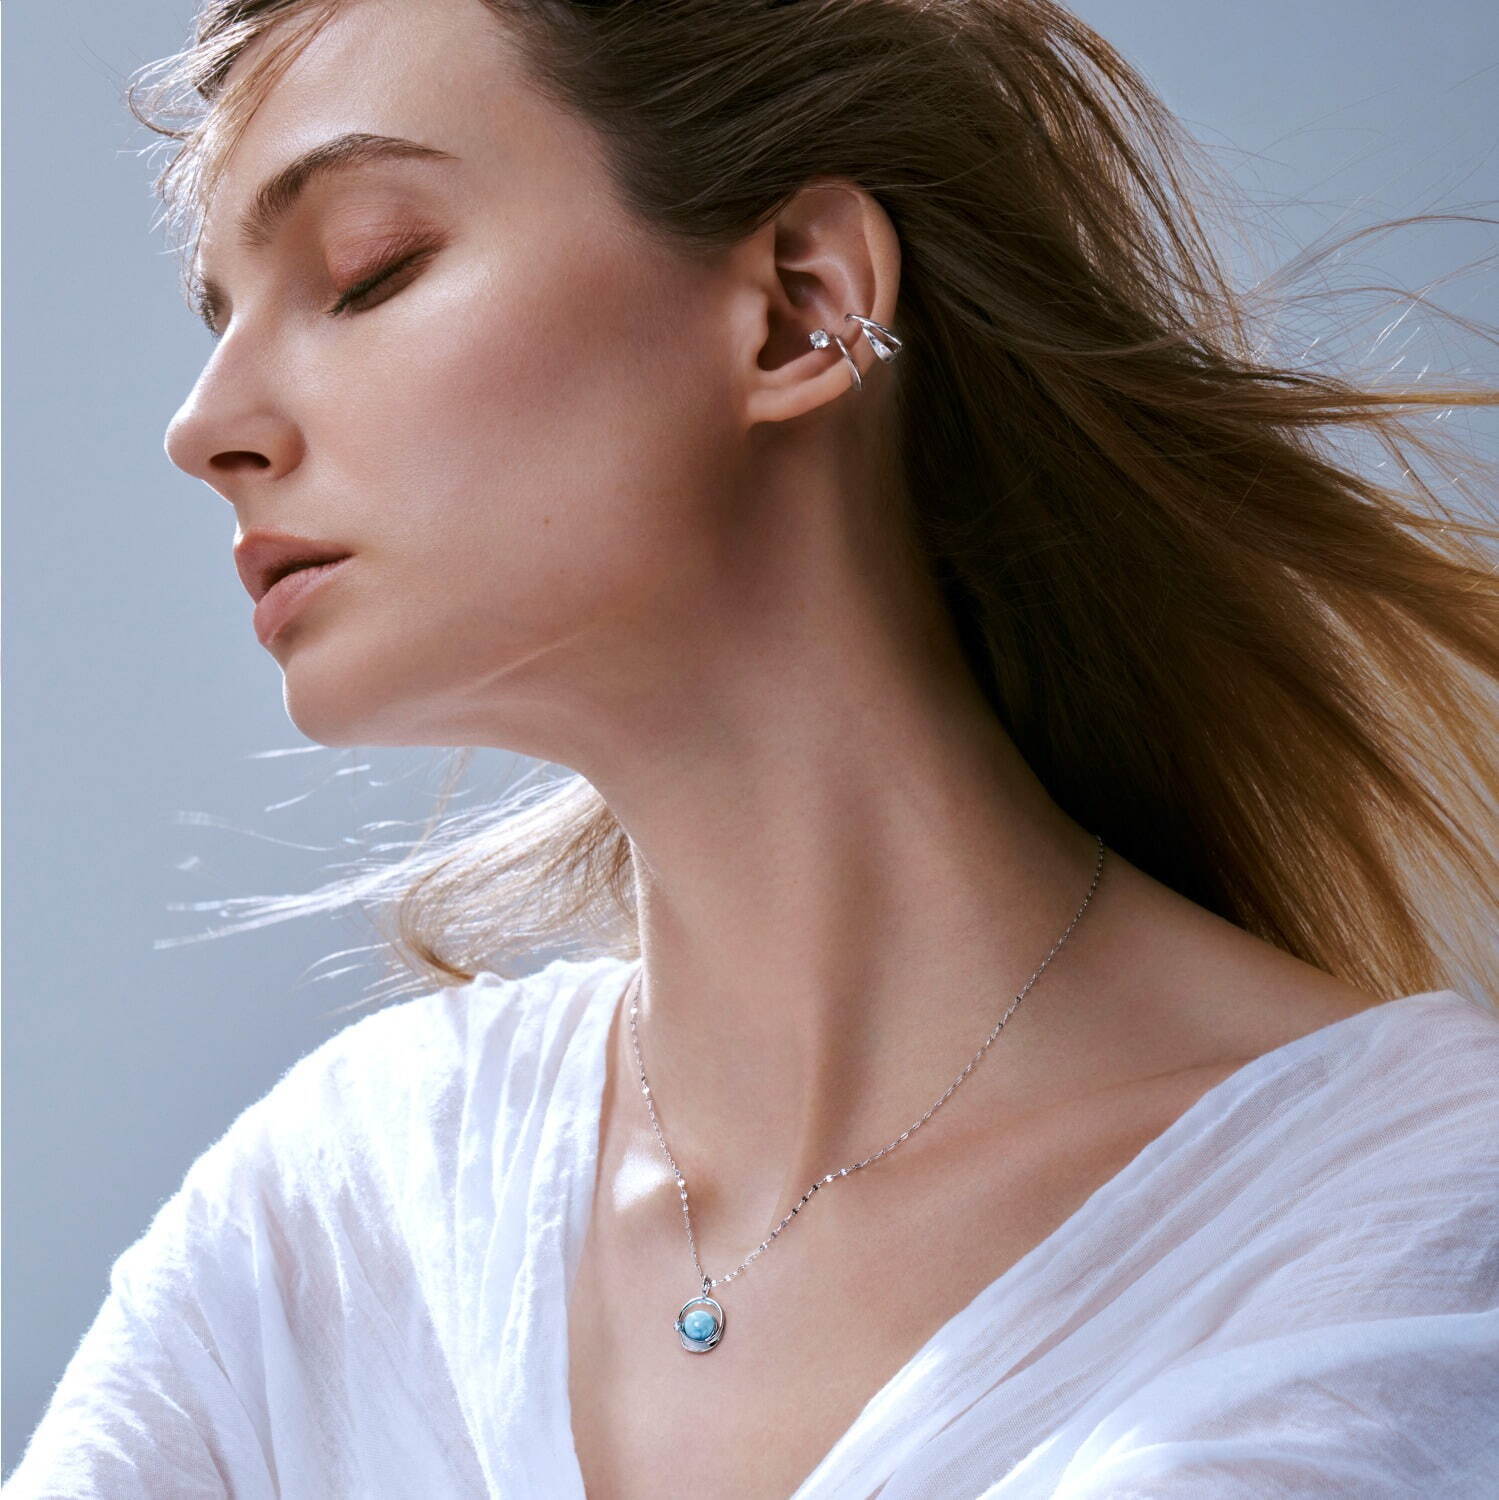 スタージュエリー「オーシャニック」限定ネックレス、K18WG×ラリマー×ダイヤモンドの上質モデル - ファッションプレス